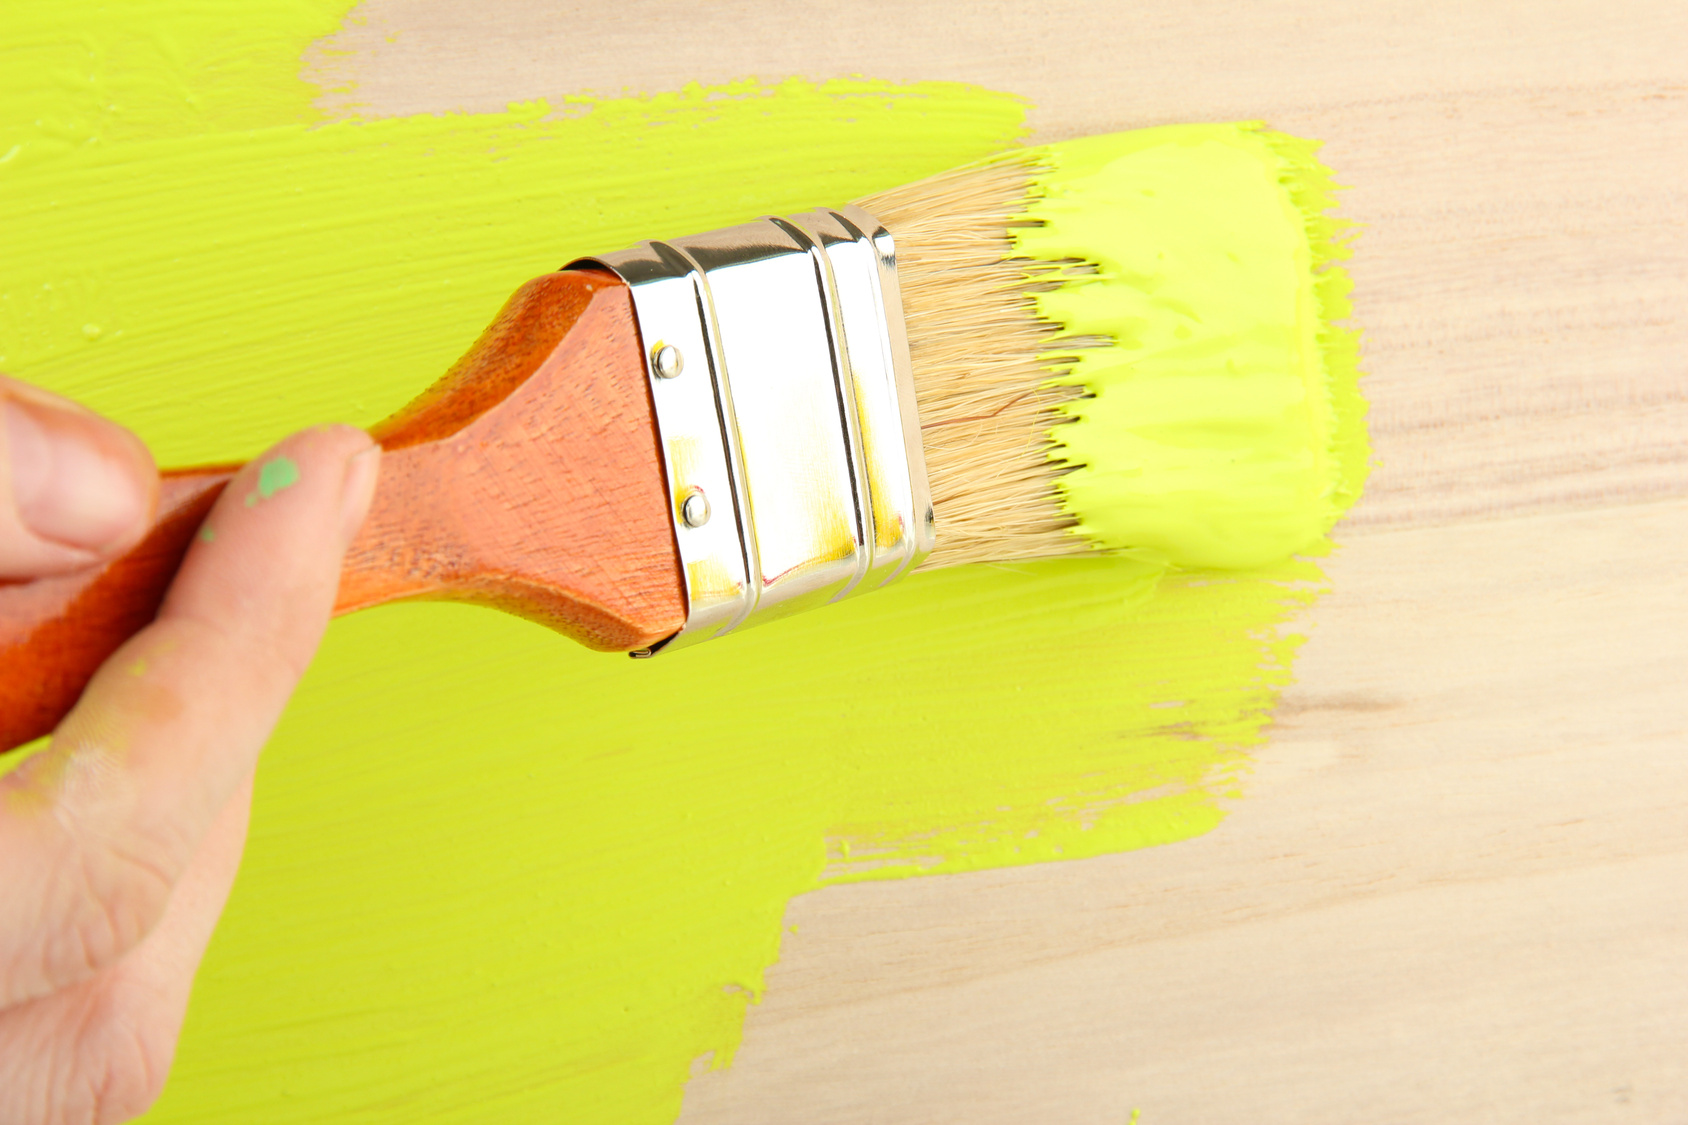 Окрашивание стен кистью. Кисточка для покраски стен. Краска для окраски дерева. Окрашивание поверхности кистью.